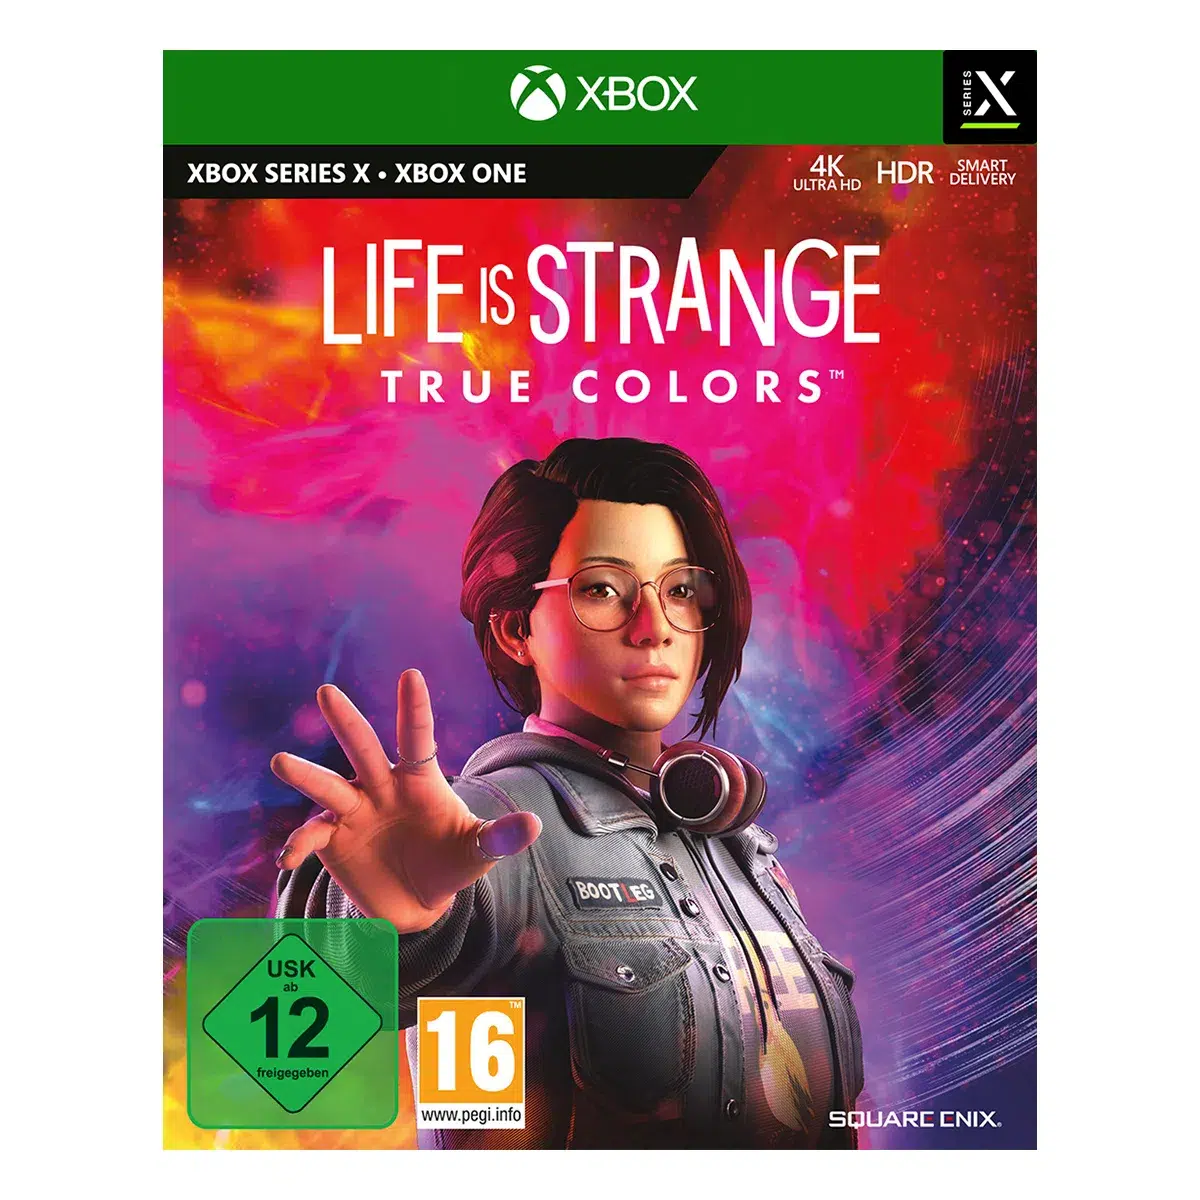 Life is Strange: True Colors - XSRX